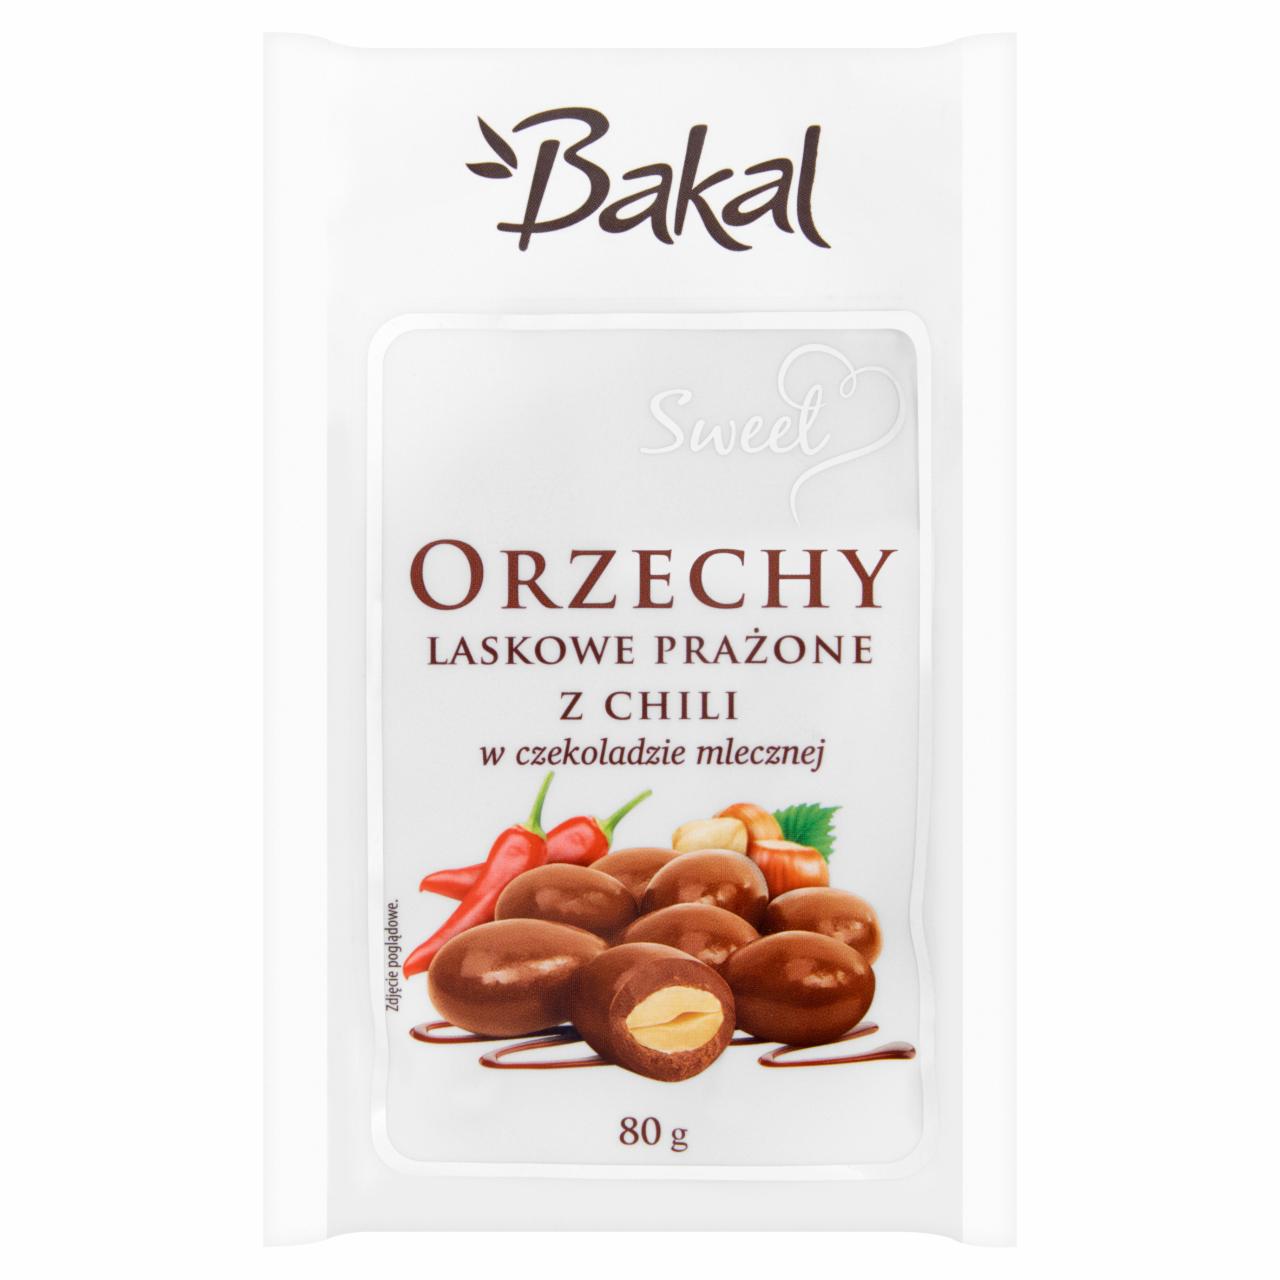 Zdjęcia - Bakal Sweet Orzechy laskowe prażone z chili w czekoladzie mlecznej 80 g